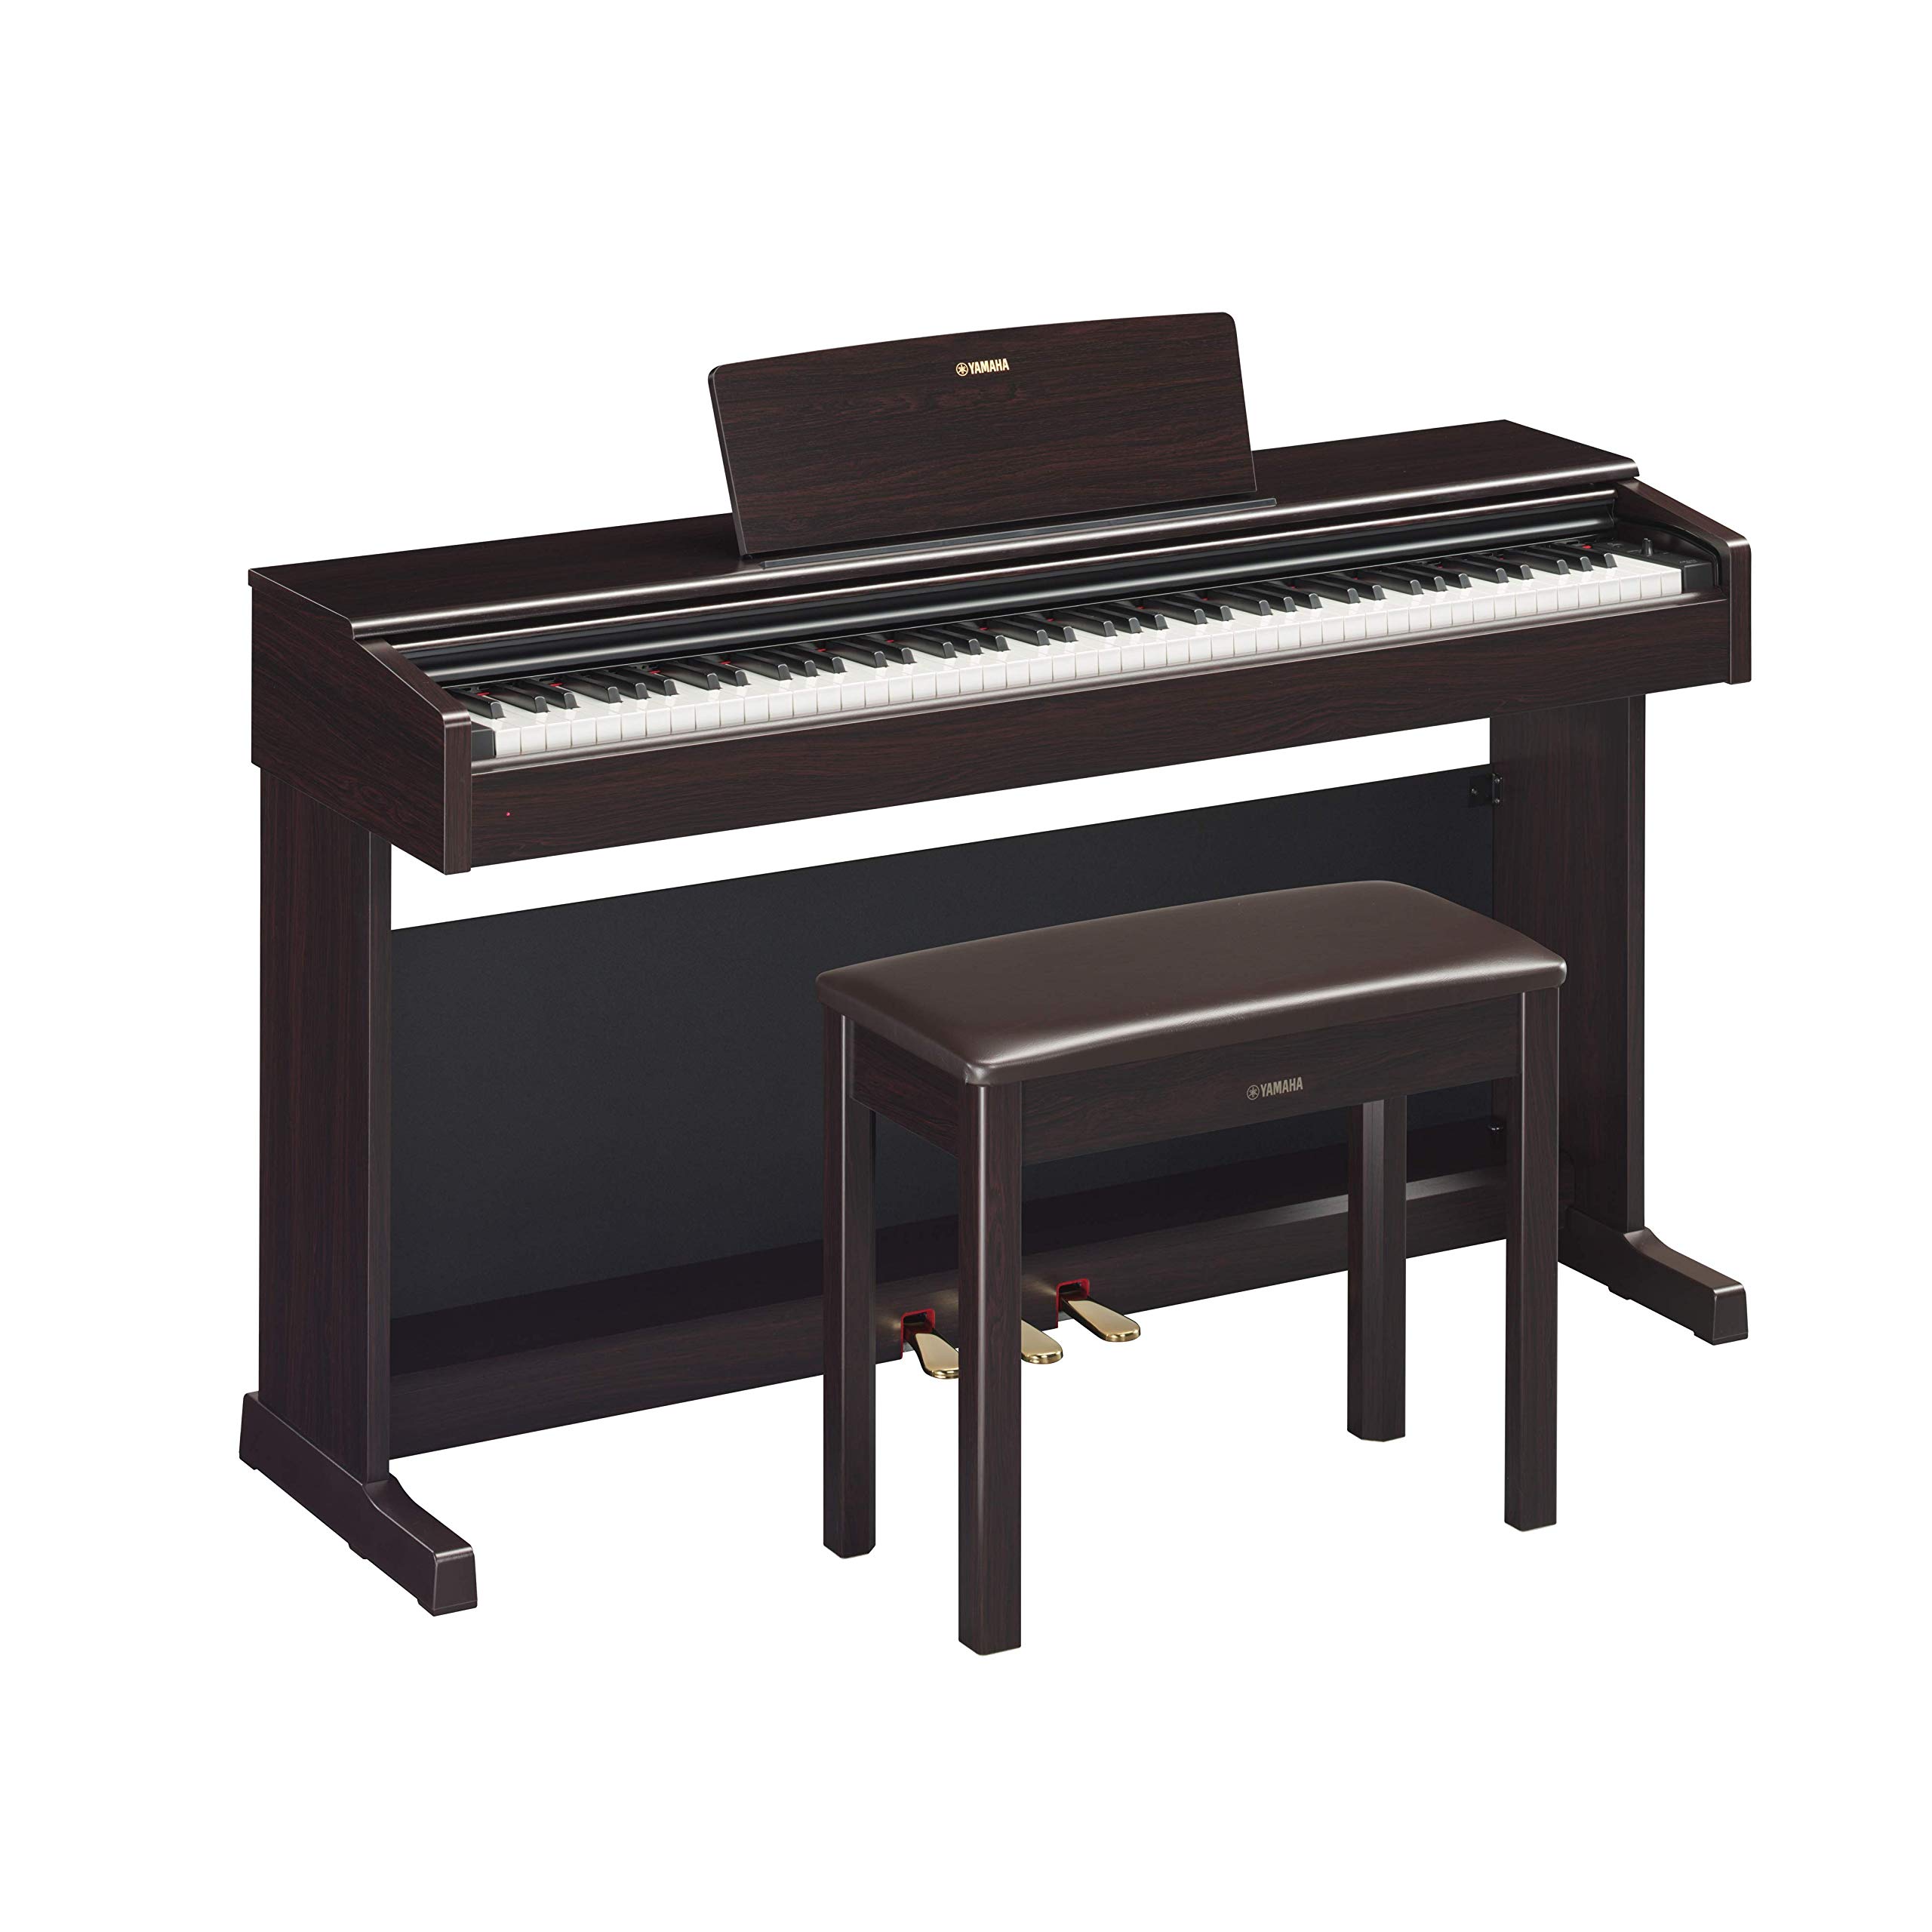 YAMAHA YDP144 Arius Series Piano with Bench, Dark Rosew...